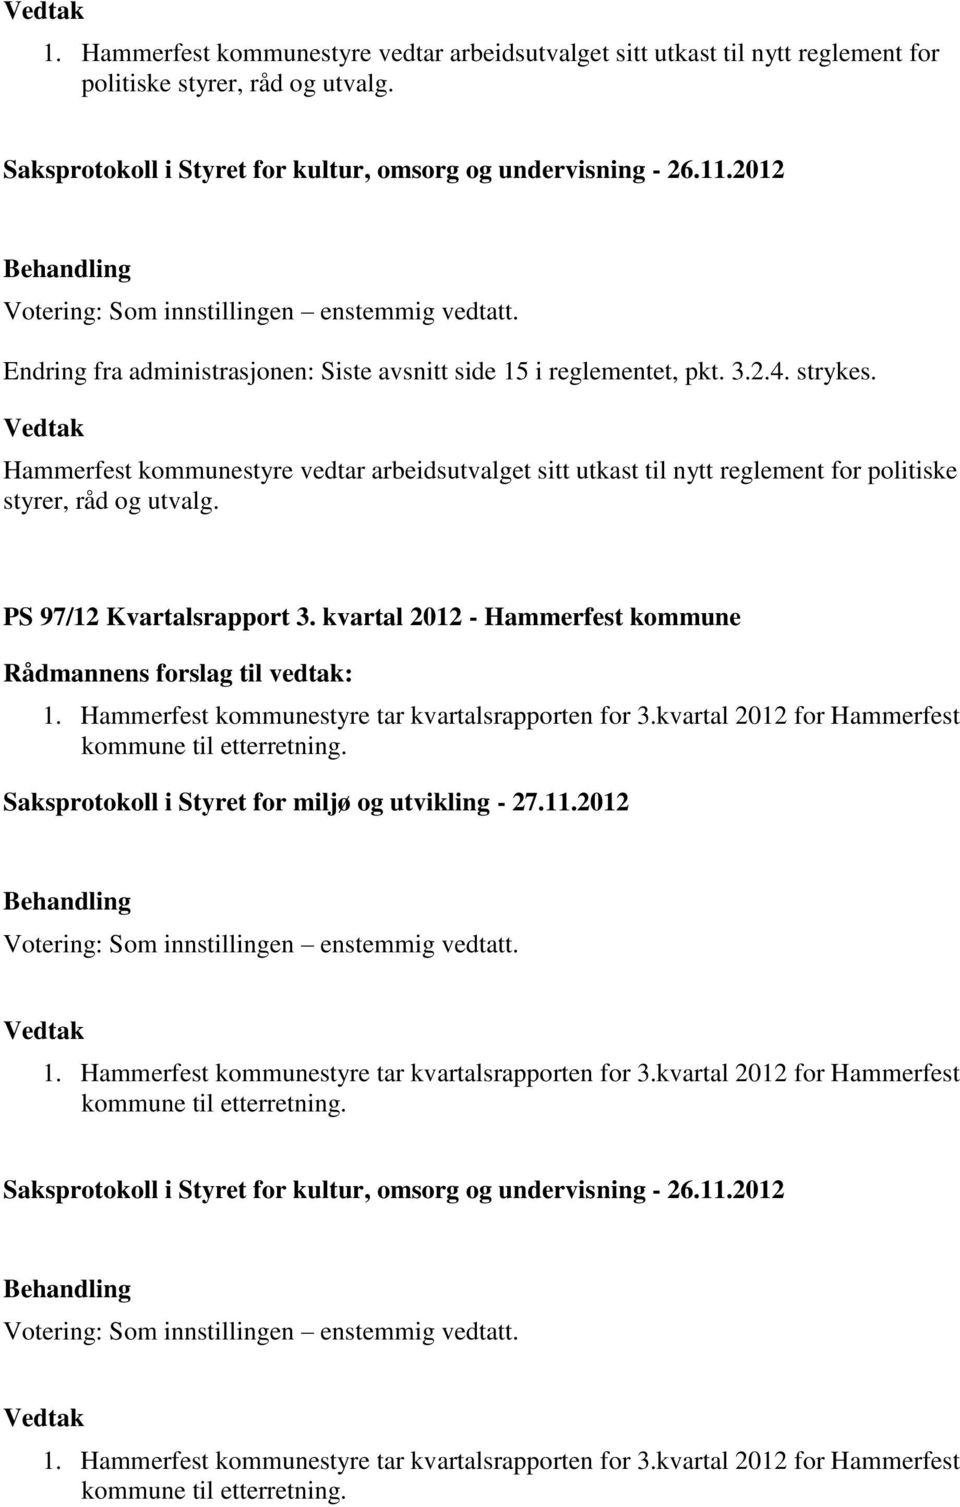 Hammerfest kommunestyre vedtar arbeidsutvalget sitt utkast til nytt reglement for politiske styrer, råd og utvalg. PS 97/12 Kvartalsrapport 3. kvartal 2012 - Hammerfest kommune 1.